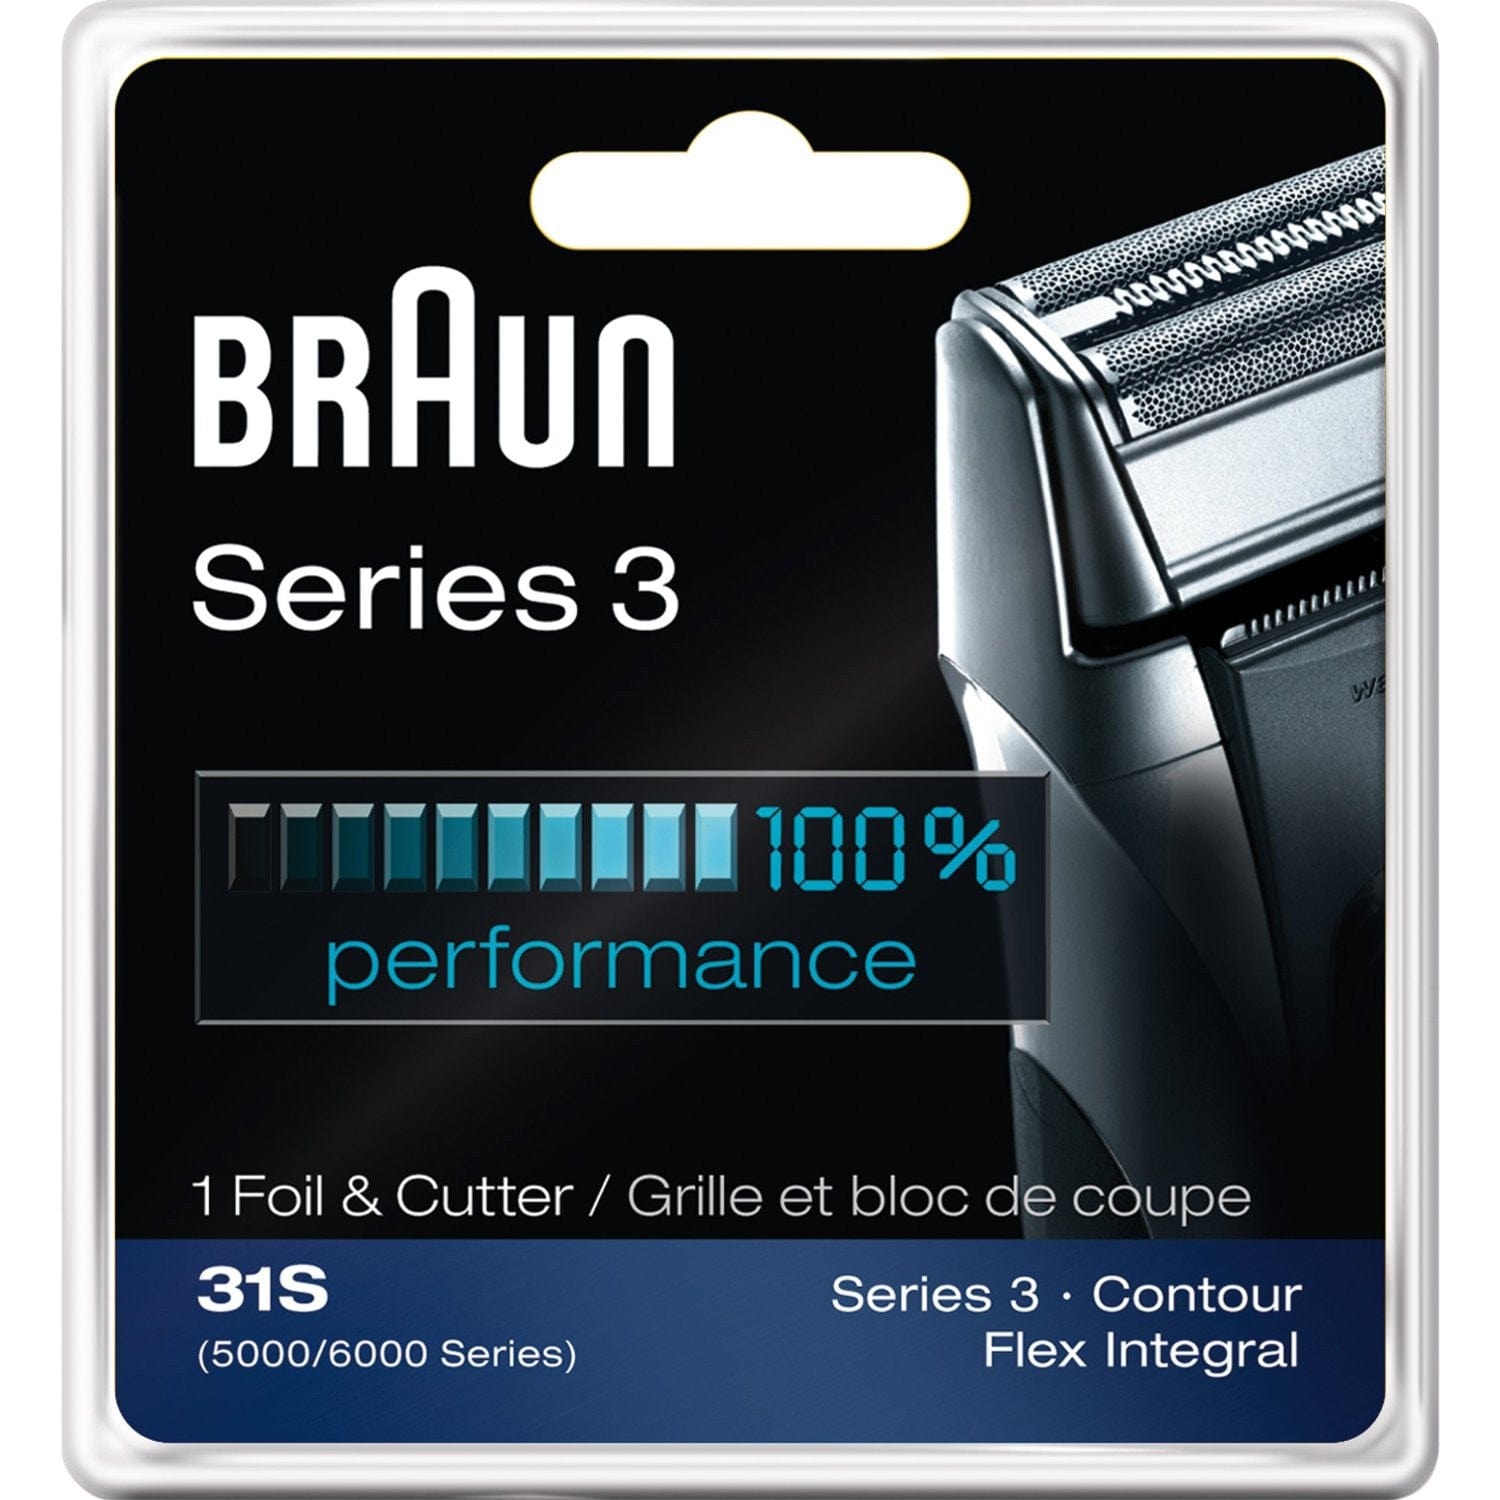 Braun Series 3 Foil & Cutter 31S (5000/6000 Series) Contour, Flex Integral